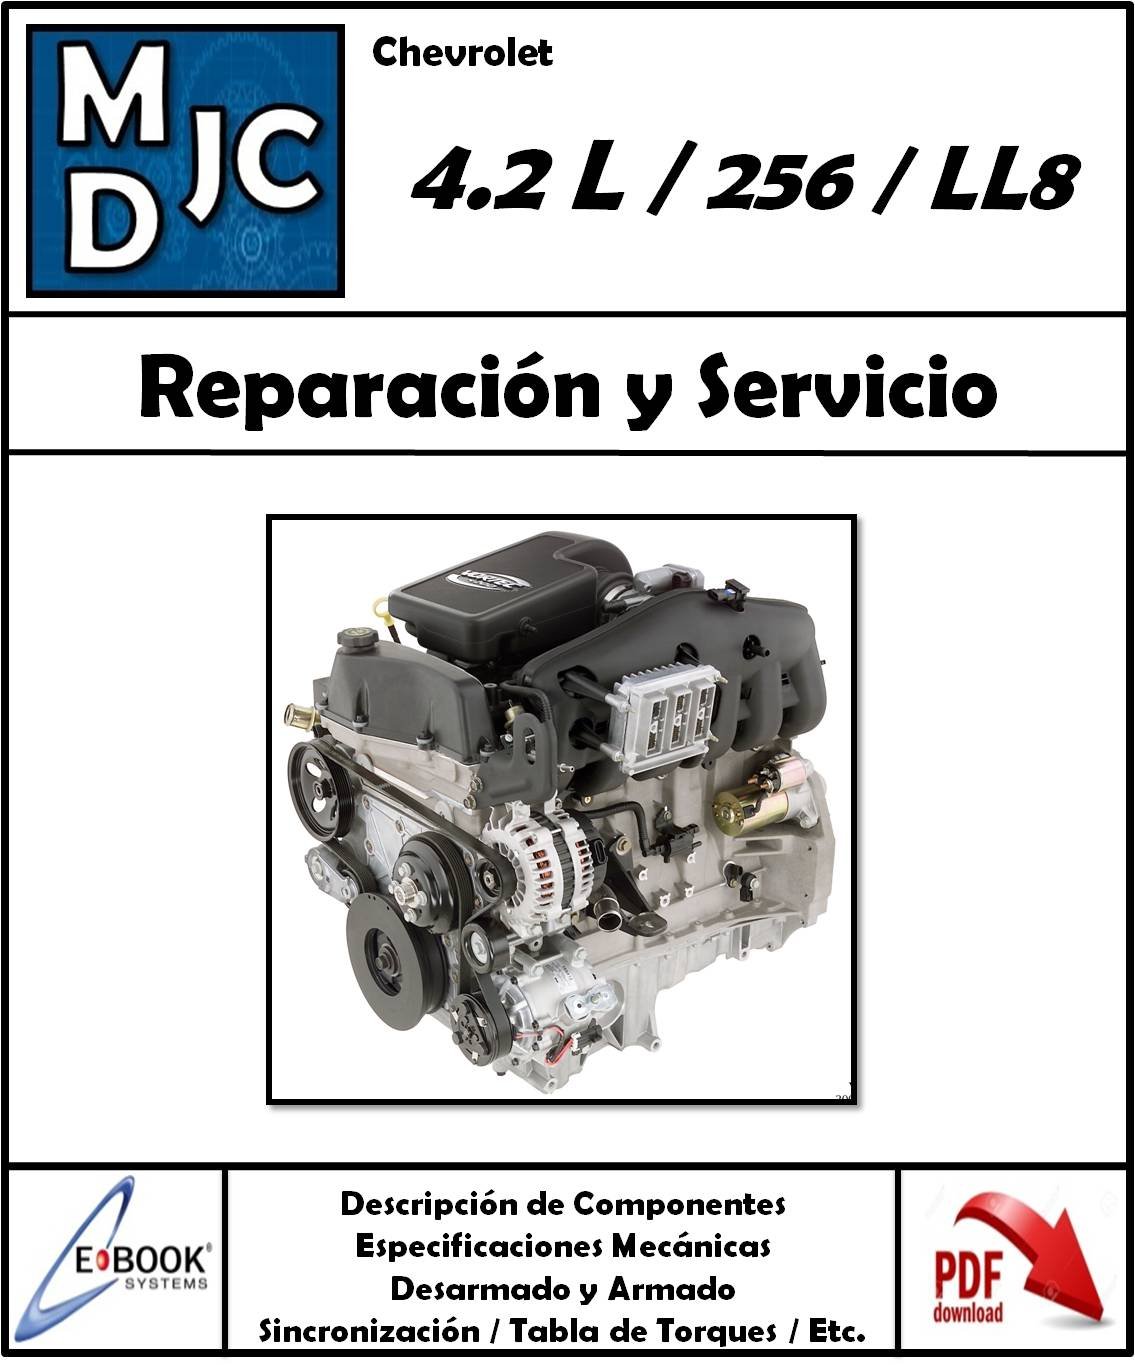 Manual de Taller (Reparación y Servicio) Motor Chevrolet 4.2 L / L6 / 256 / LL8